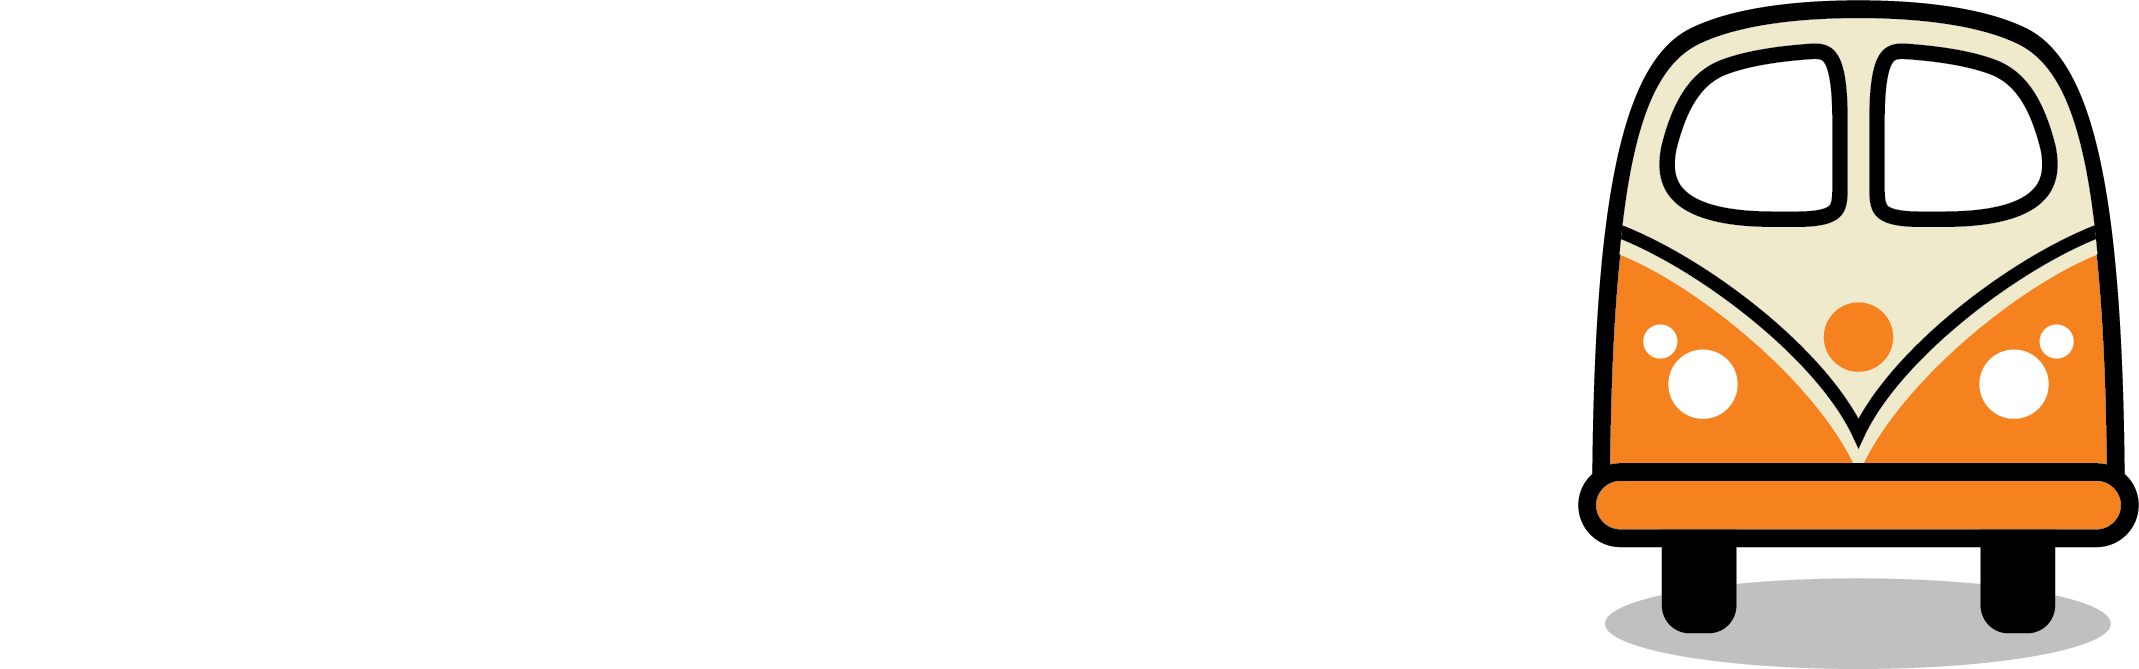 Campervan Sweden - Logo